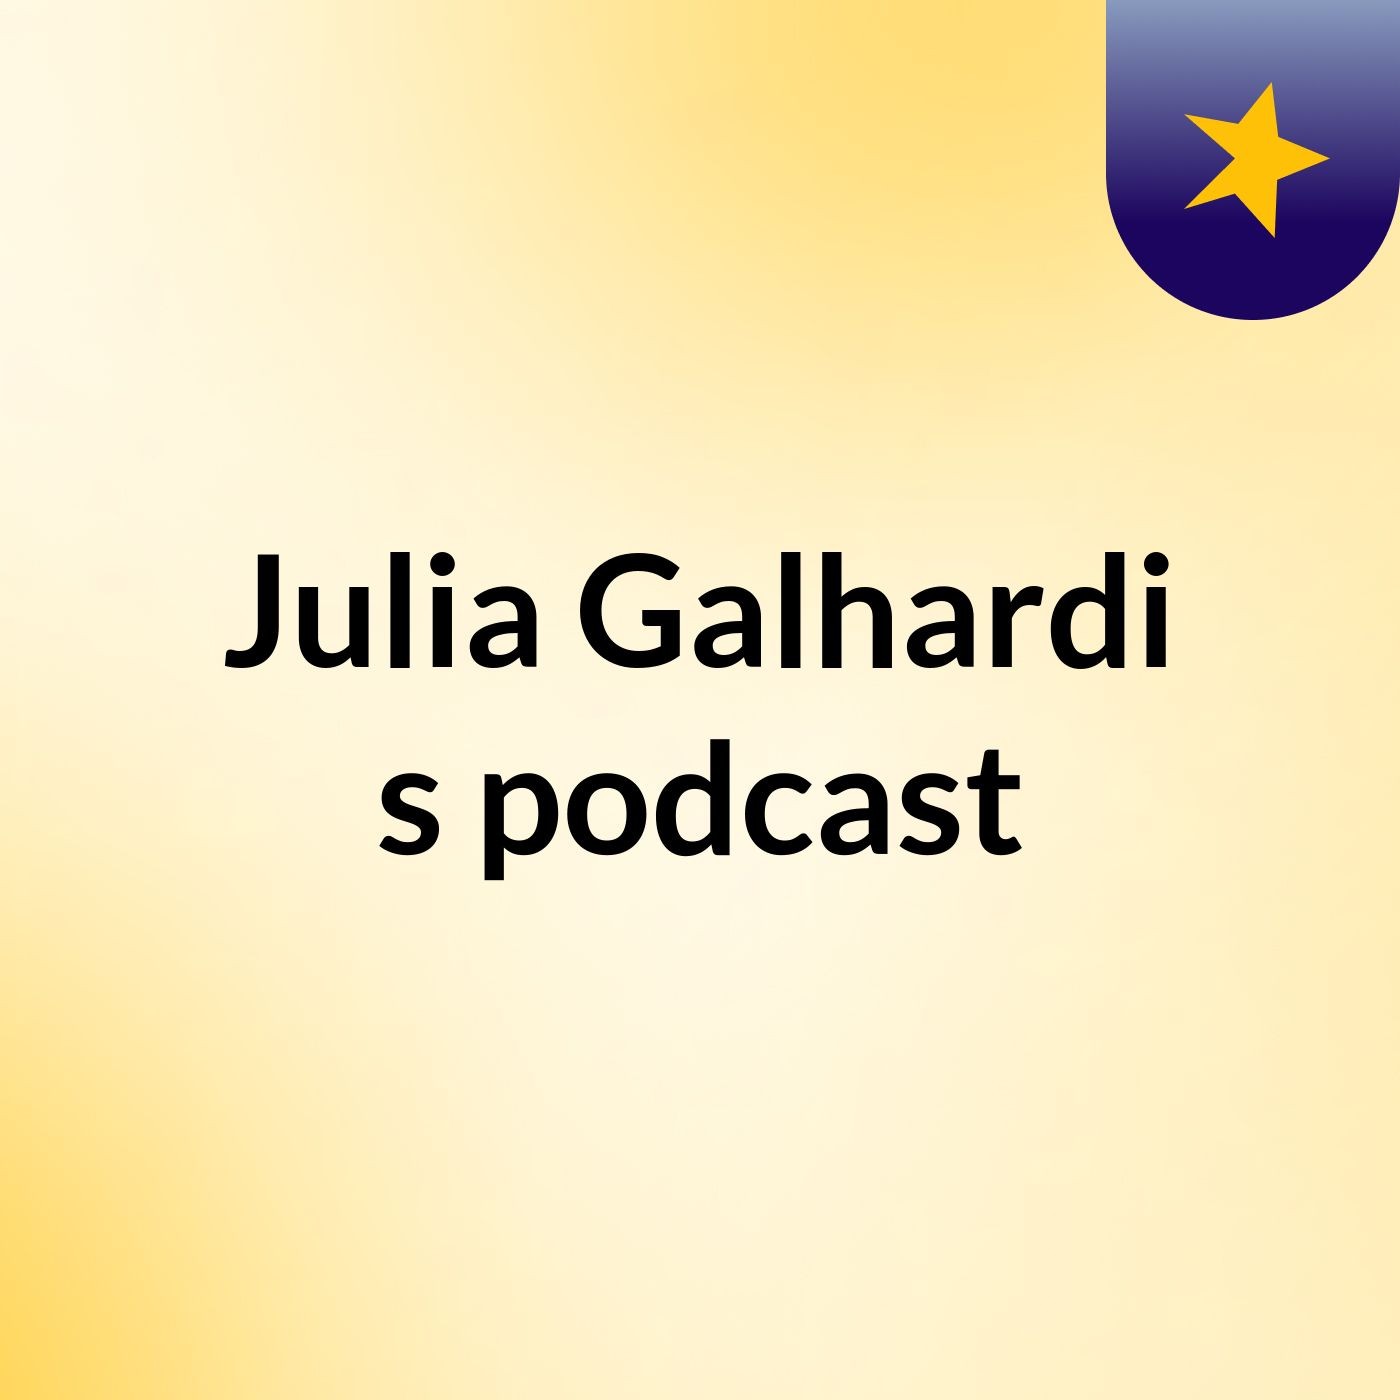 Julia Galhardi's podcast